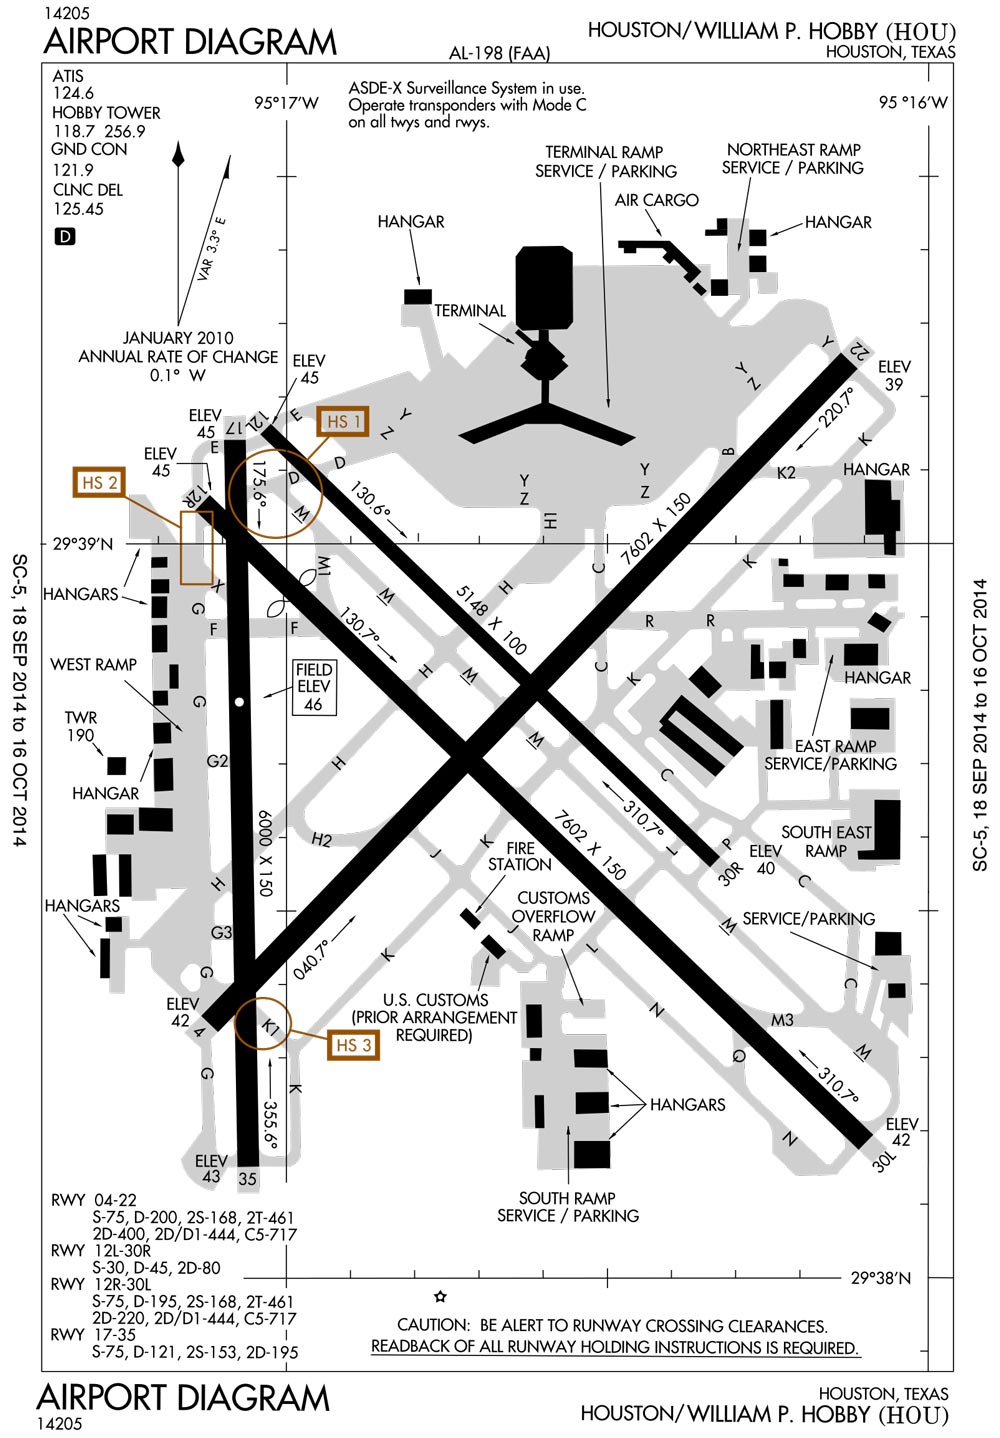 William P. Hobby Airport Diagram